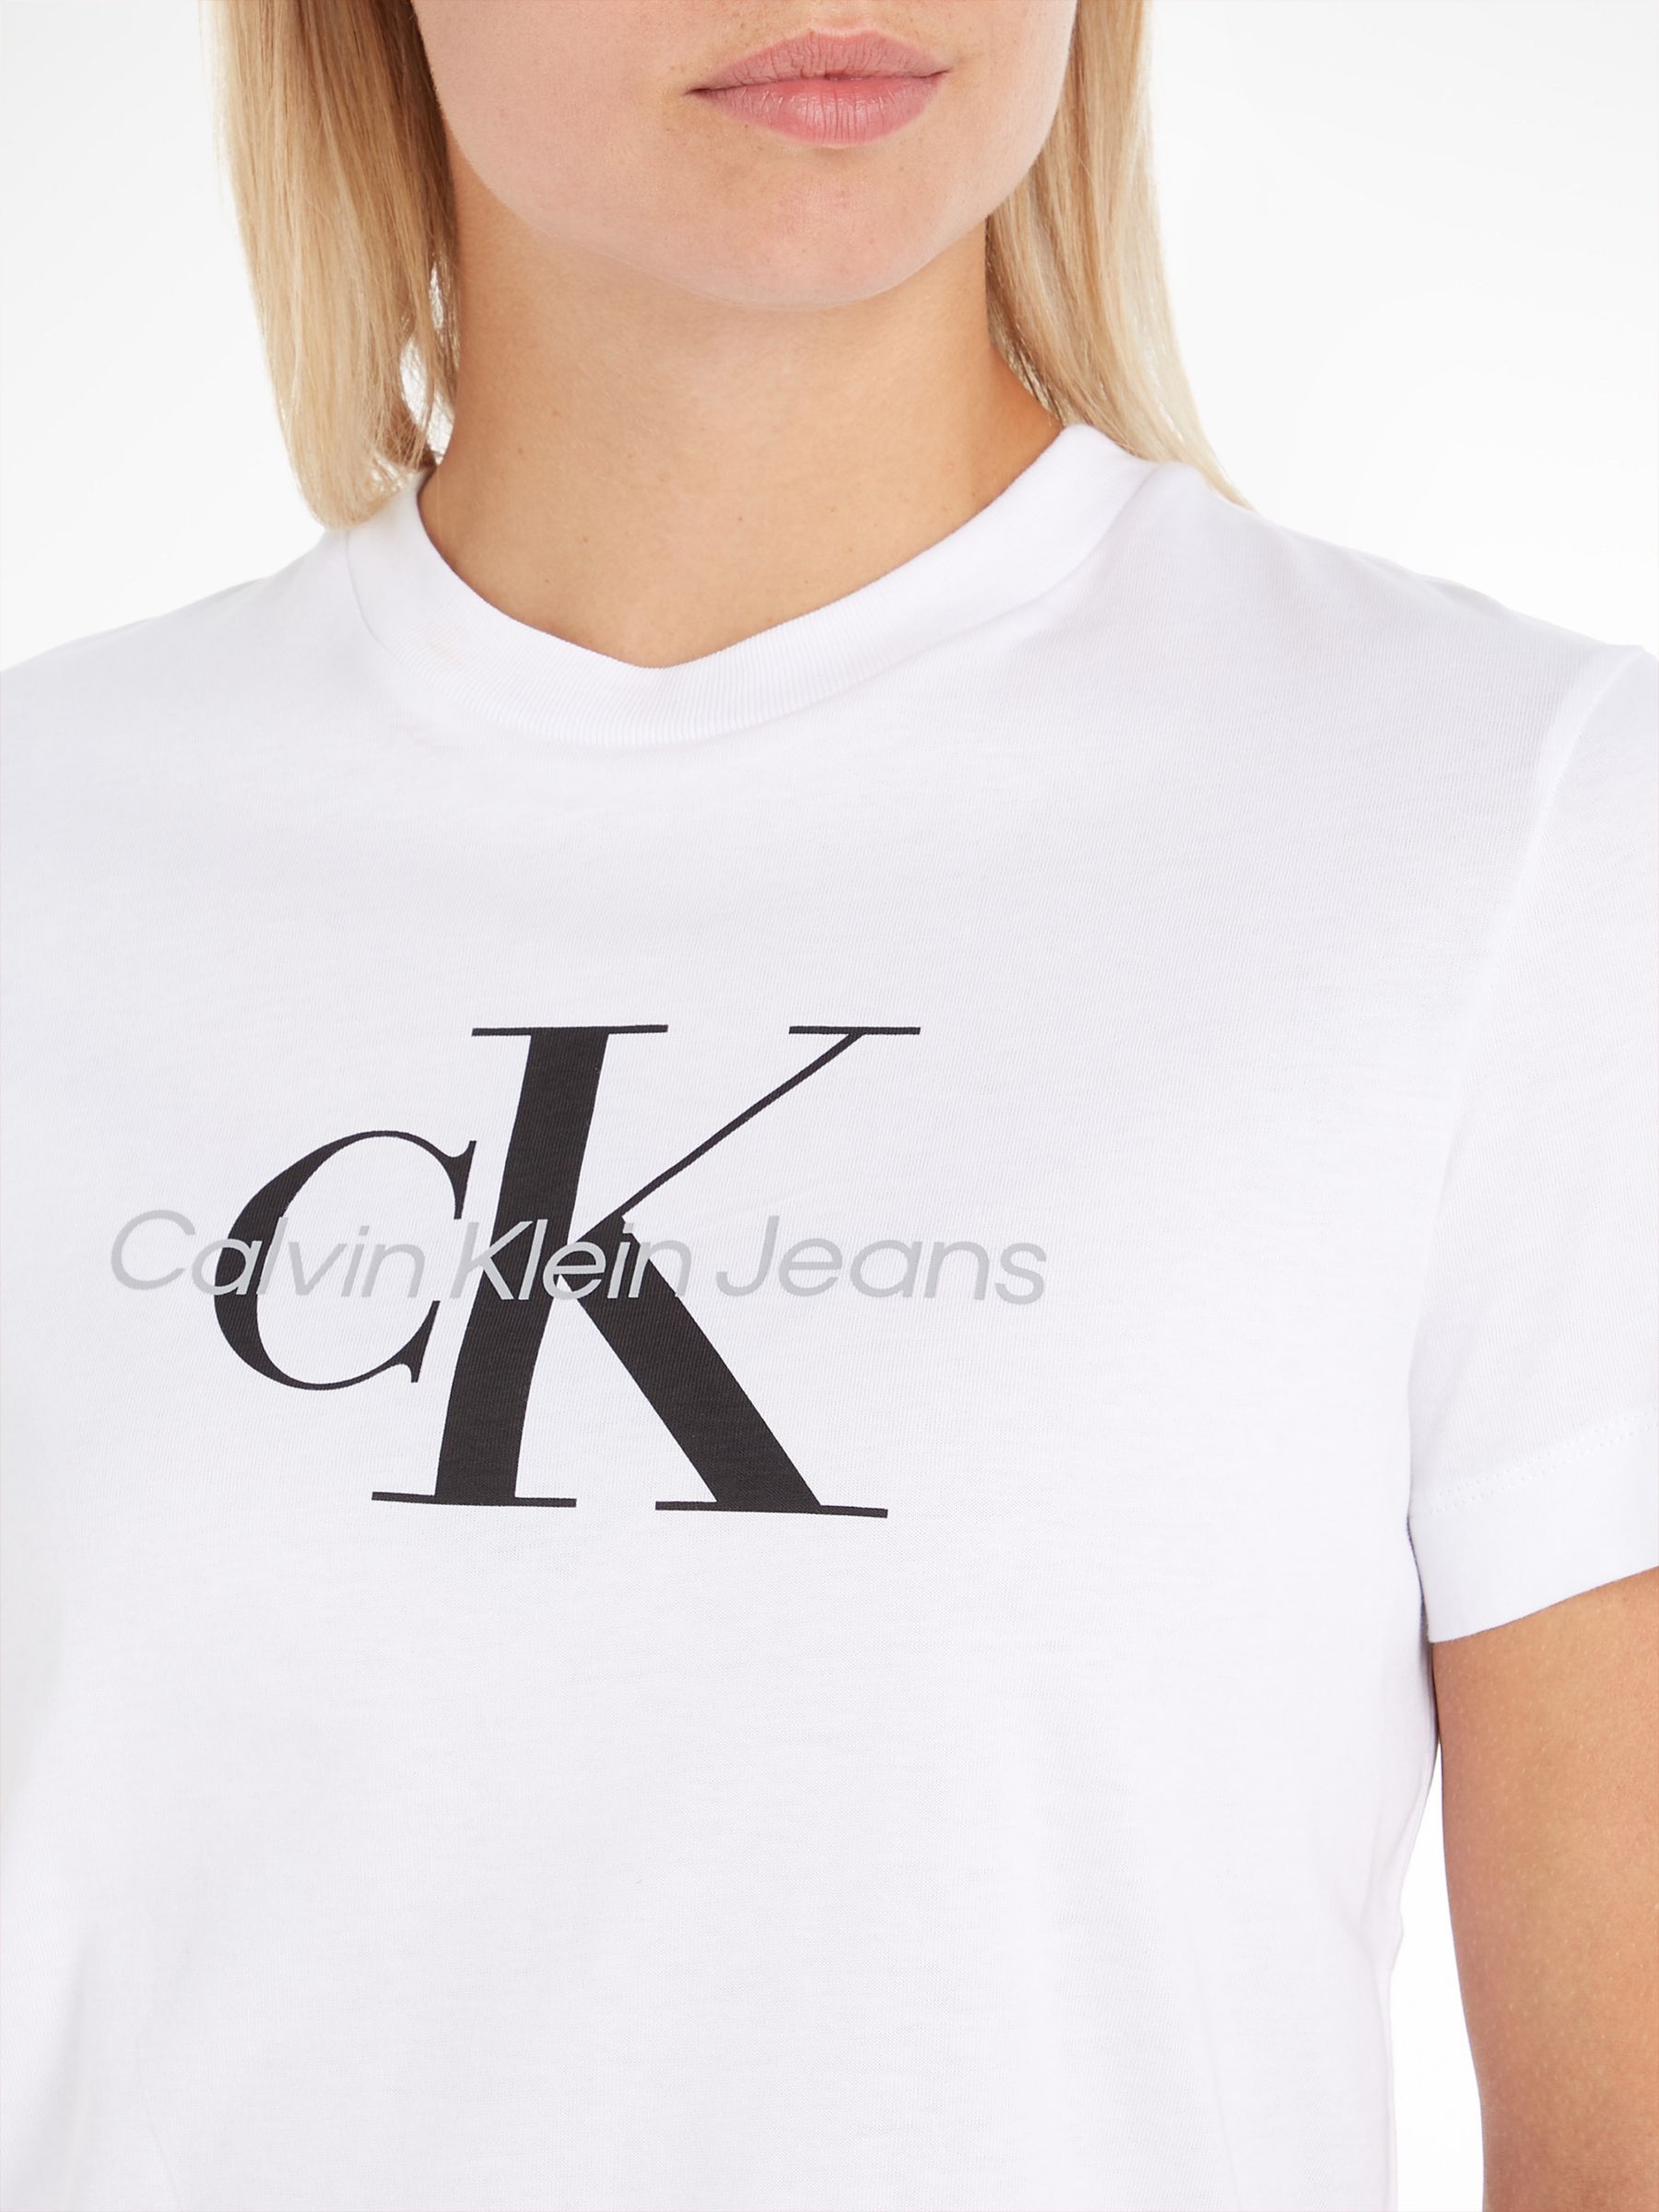 White Partners Monogram at John Klein & Logo Calvin T-Shirt, Bright Lewis